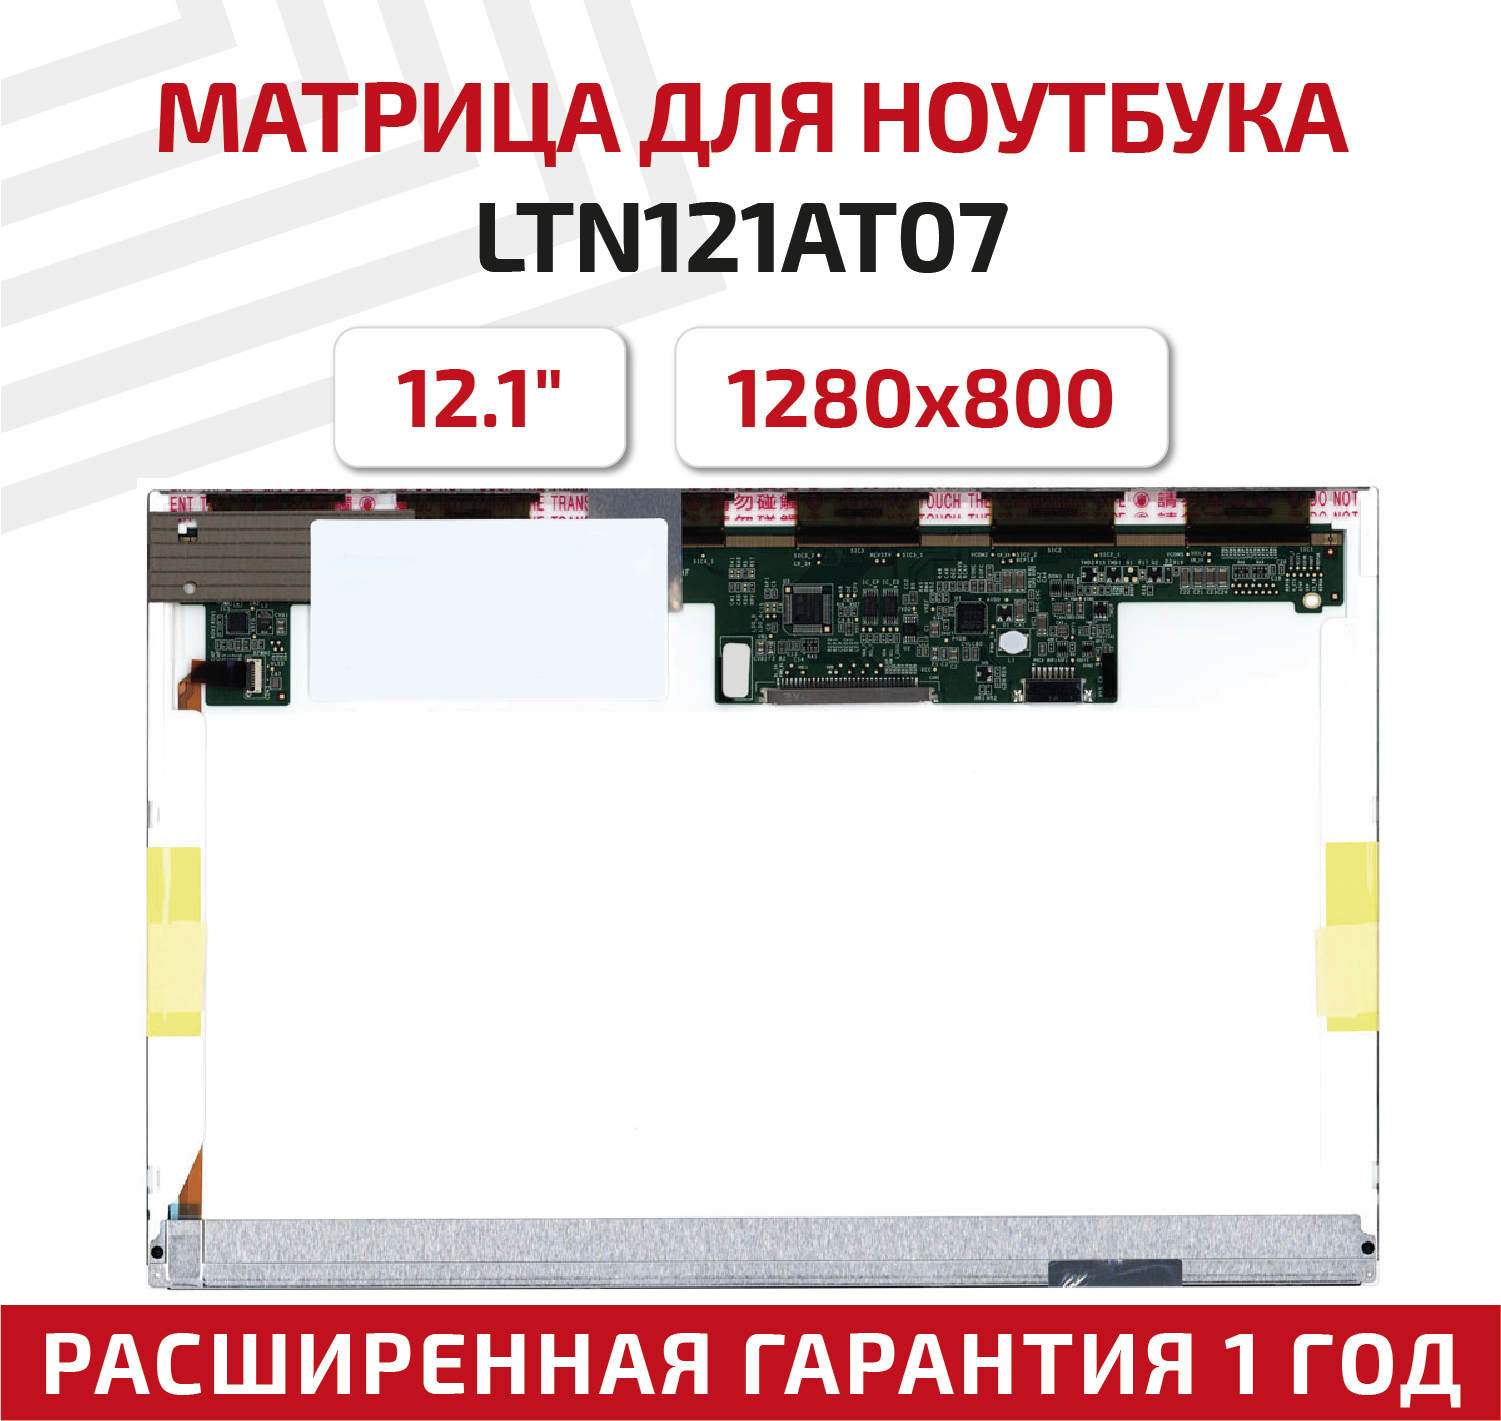 Матрица (экран) для ноутбука LTN121AT07 L02, 12.1", 1280x800, Normal (стандарт), 40-pin, светодиодная (LED), глянцевая